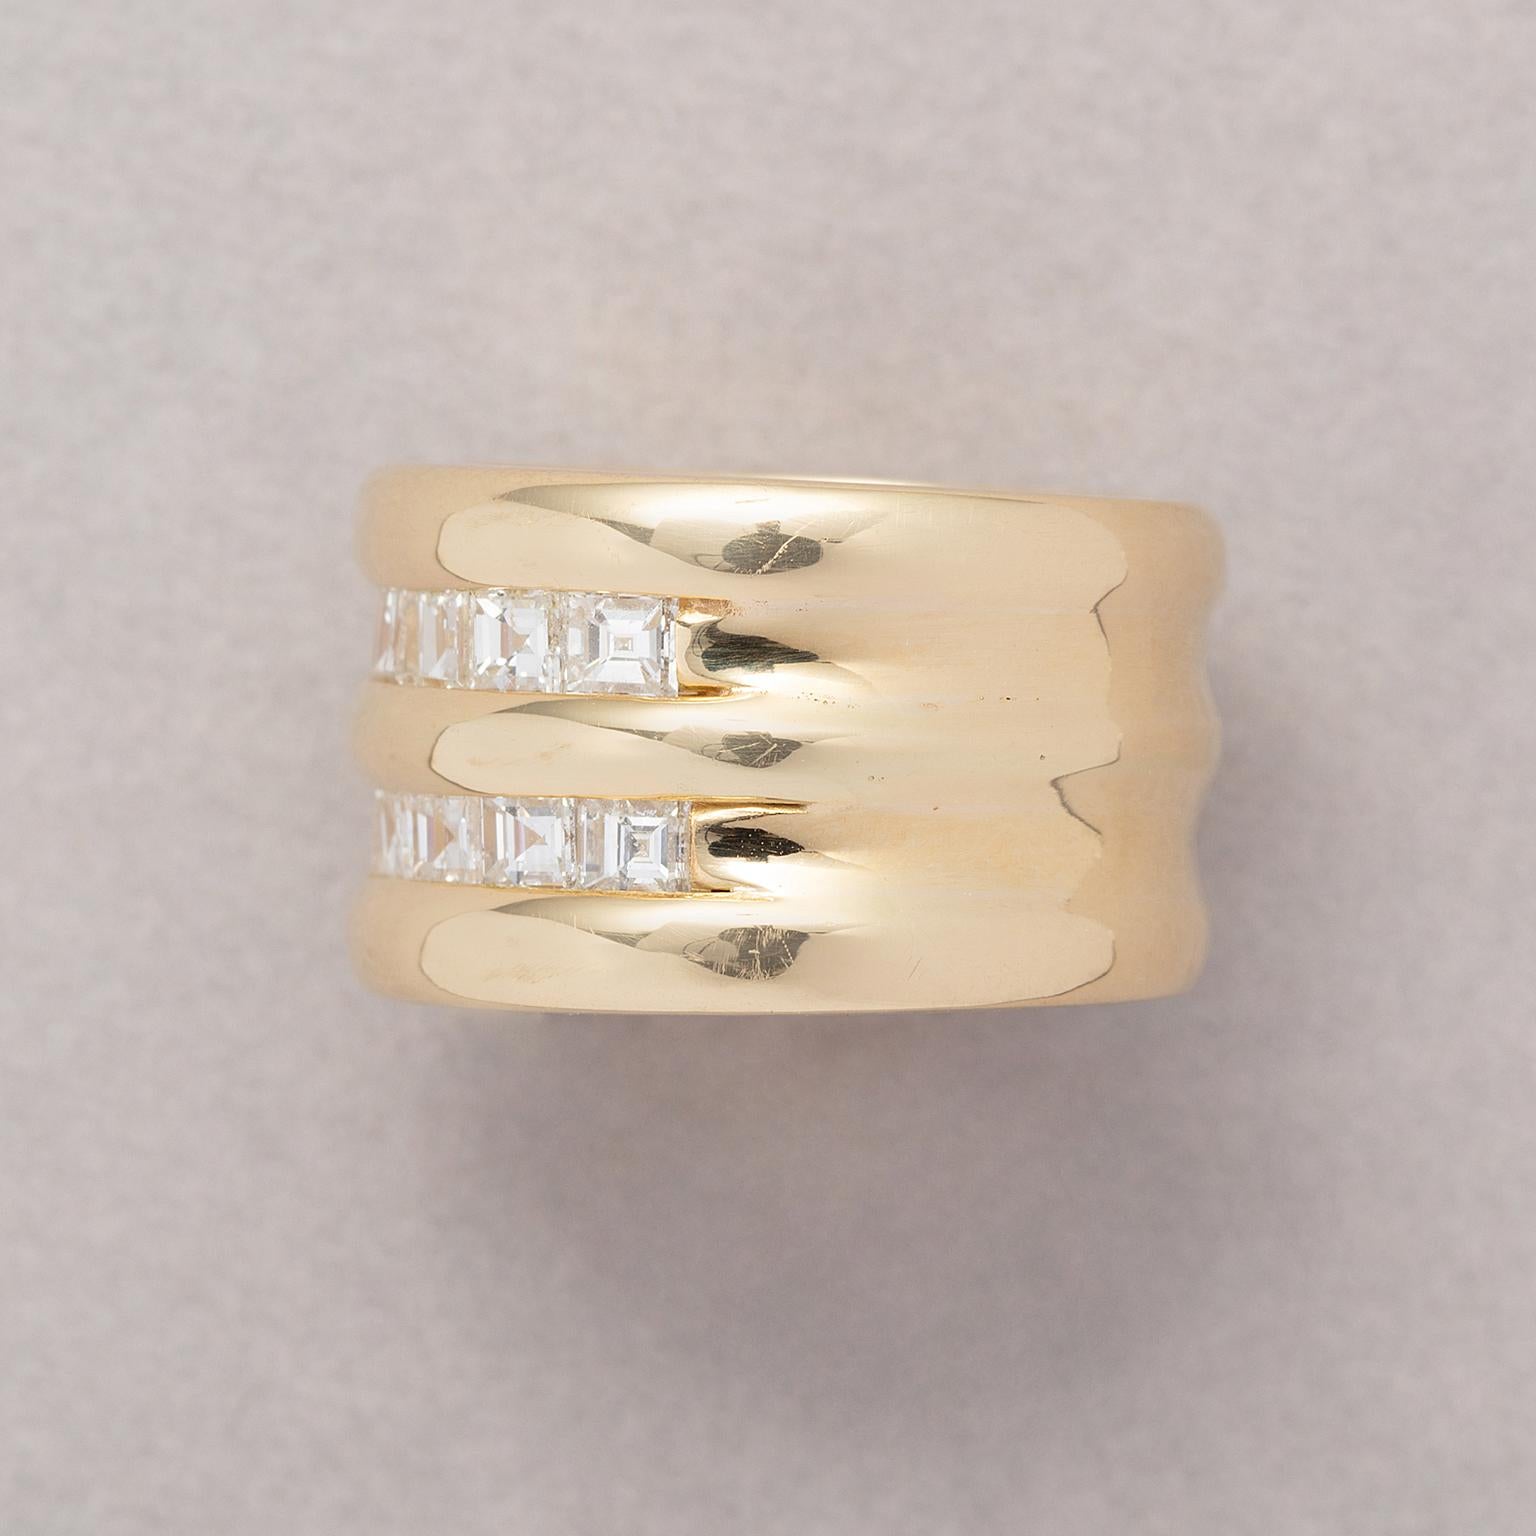 Bague large en or 14 carats avec deux rangées de diamants taillés en carré (env. 1,6 carat au total, G - Vs), sertie sur l'oreiller.

poids : 23,88 grammes
taille de l'anneau : 16 mm / 5.5 US
largeur : 1.2 cm